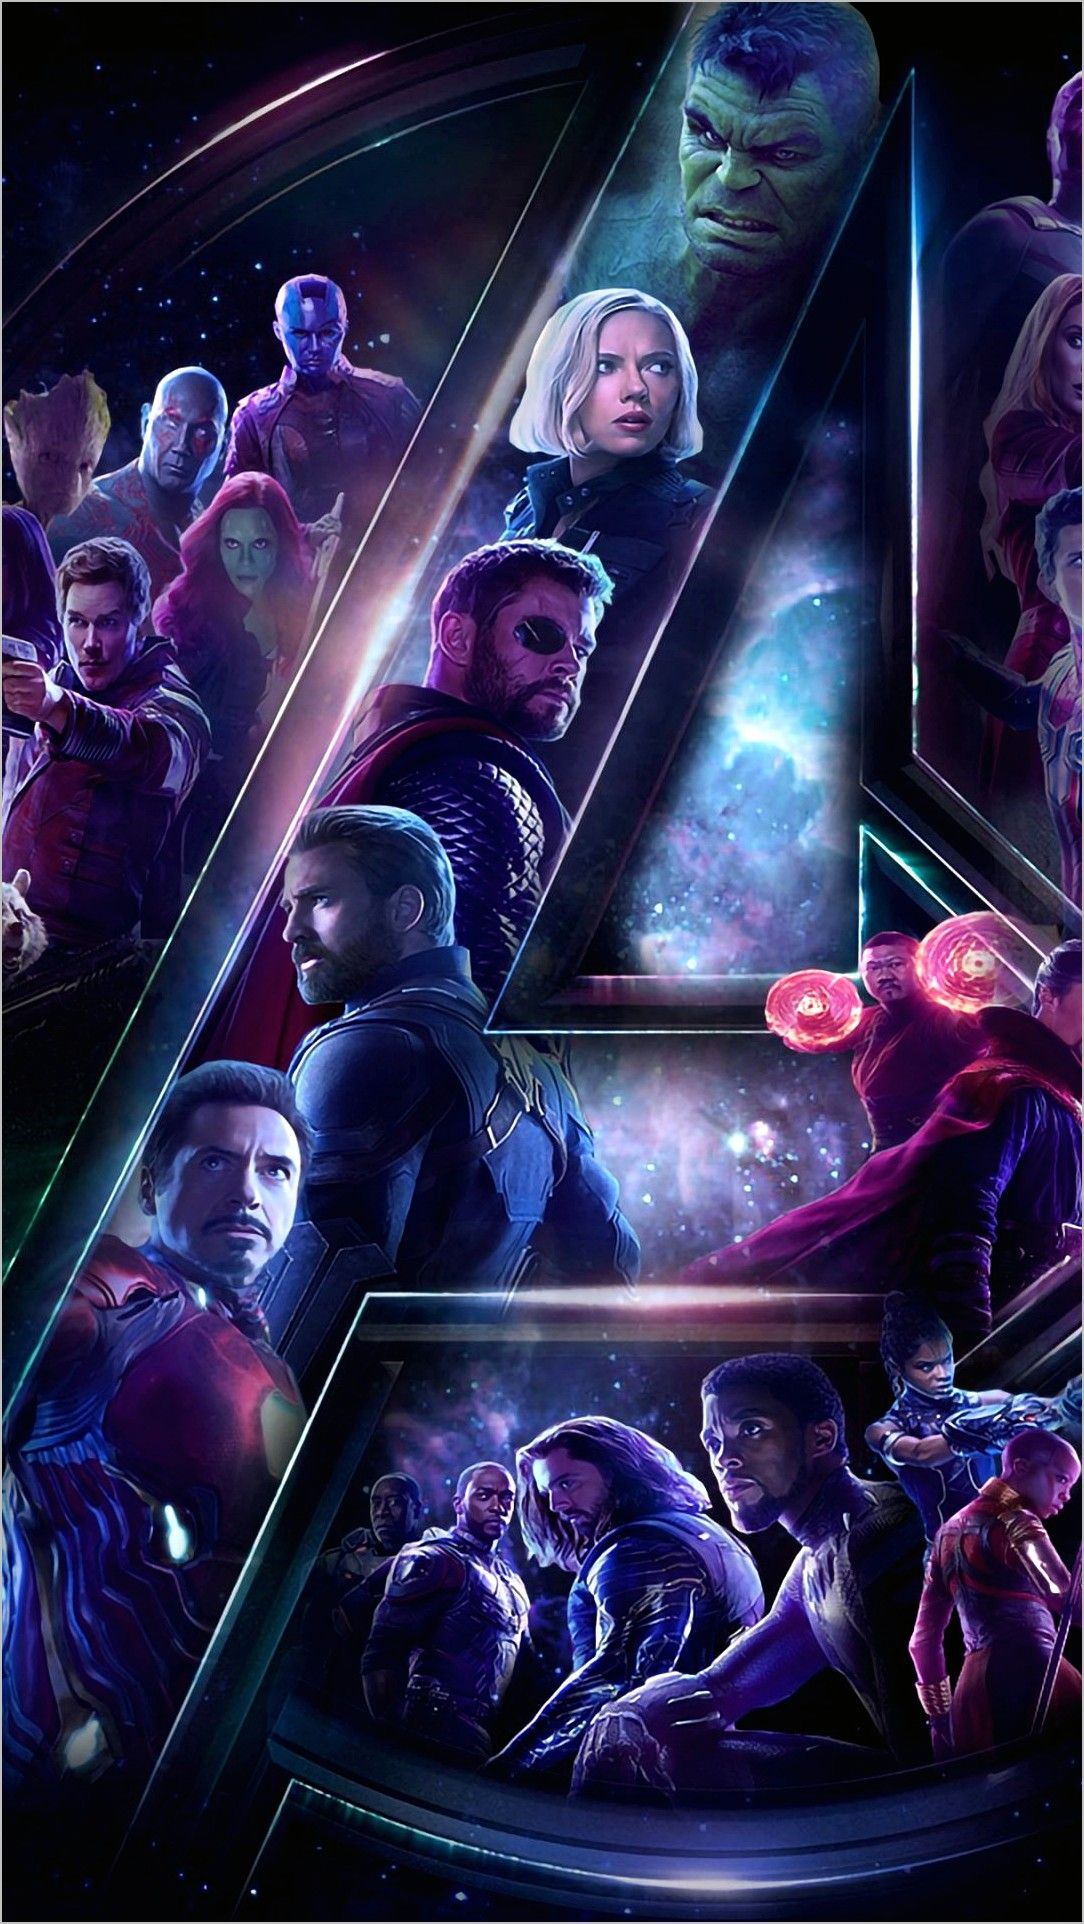 Avengers Mobile Wallpaper 4k. Avengers wallpaper, Mobile wallpaper, Wallpaper